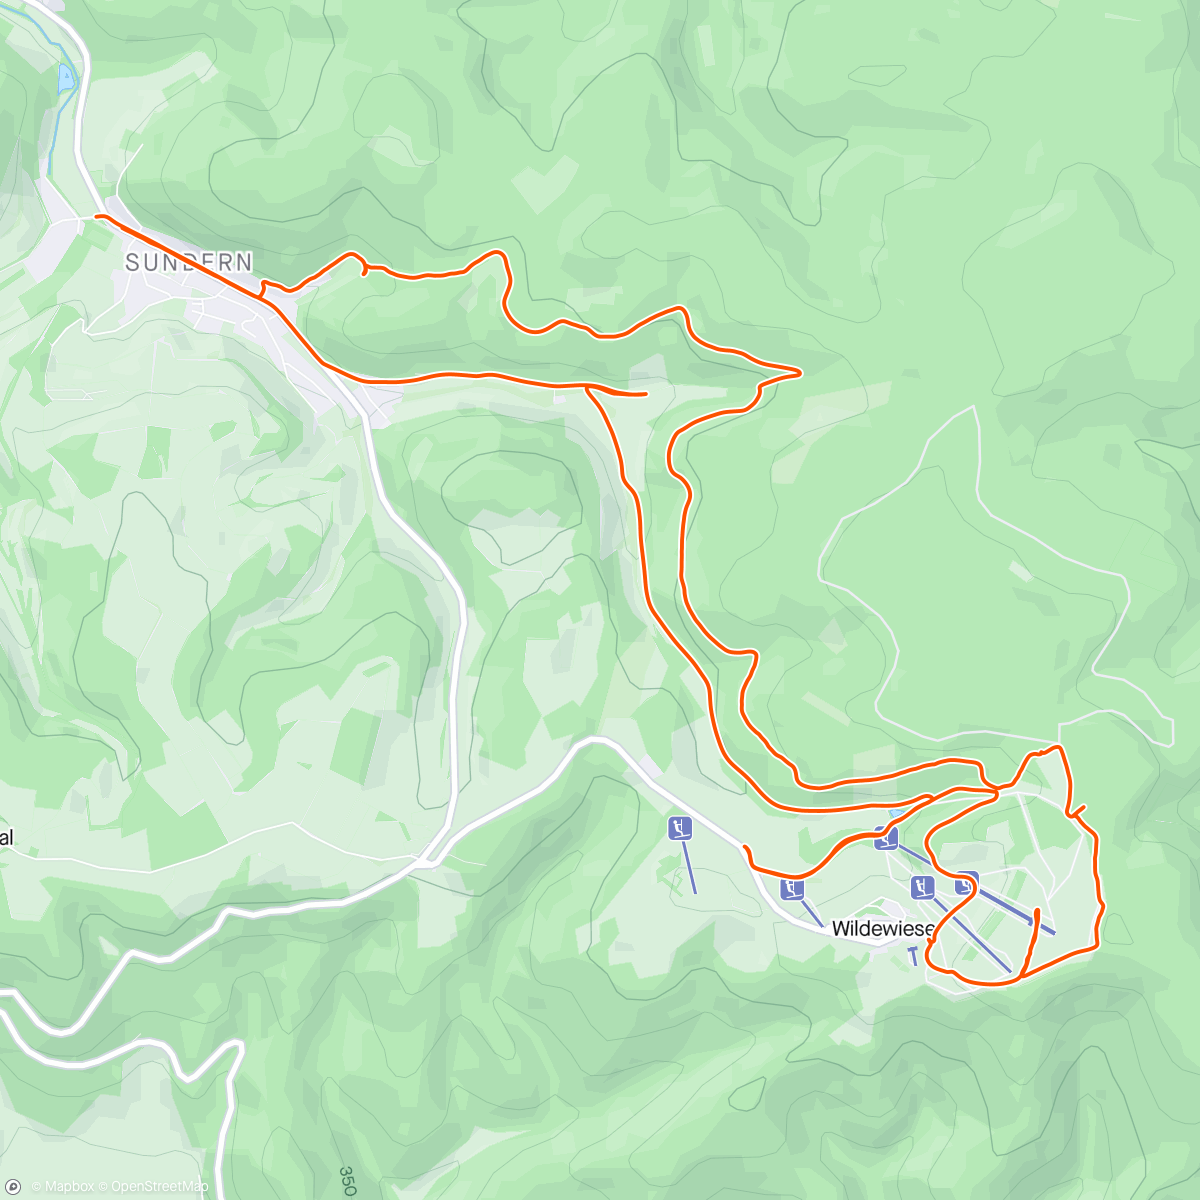 アクティビティ「Radtour mit Junior nach dem Nachwuchsrennen in Sundern-Hagen」の地図